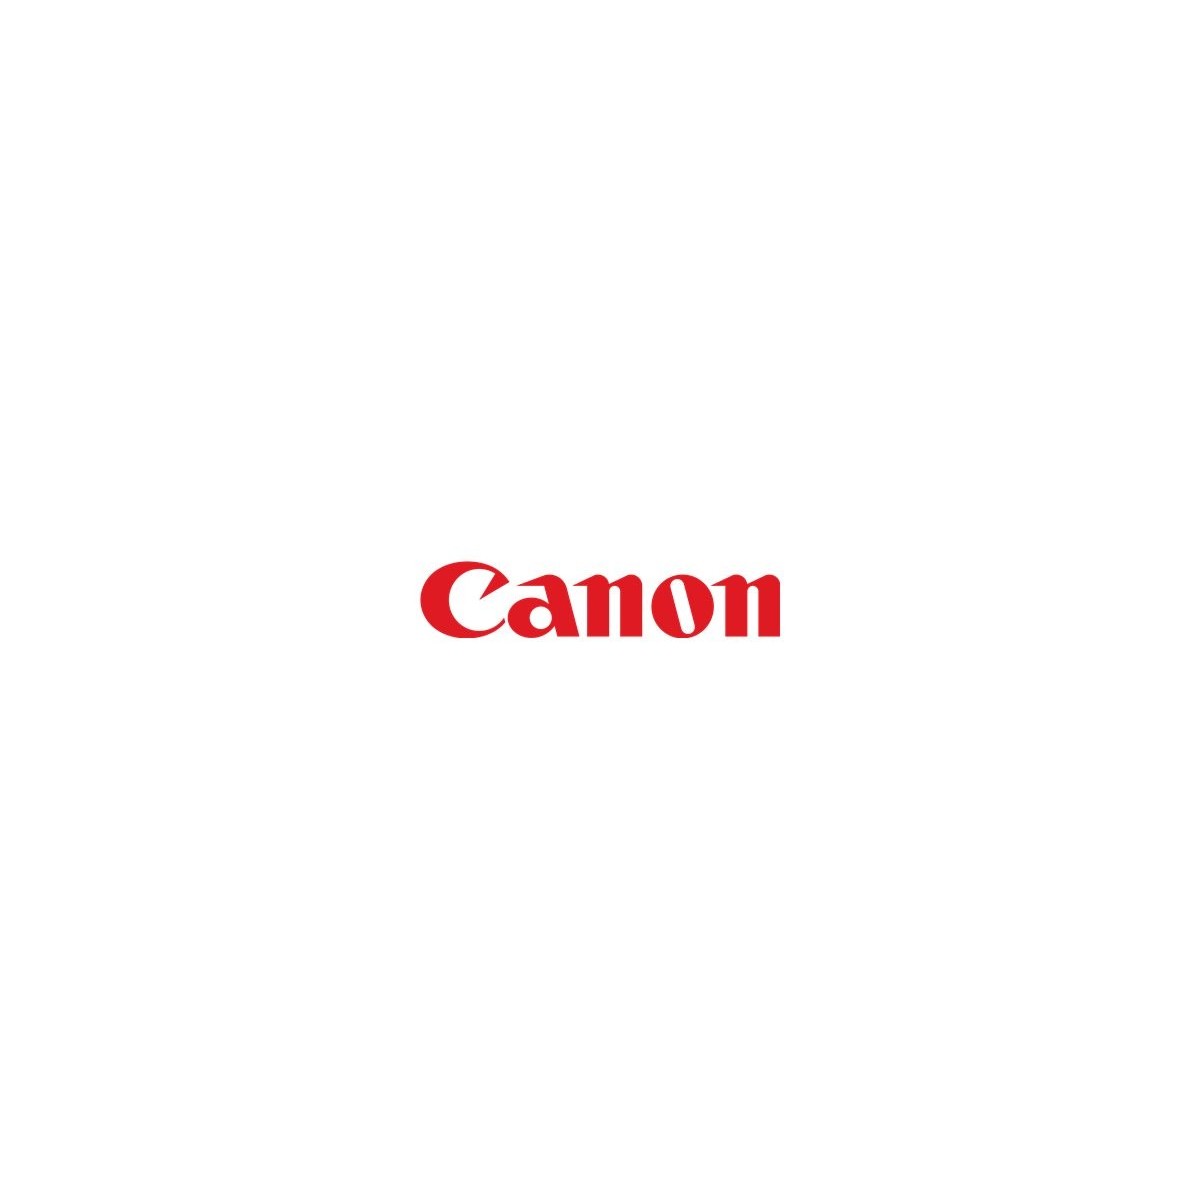 Canon Press. Roller FM0-0387-000